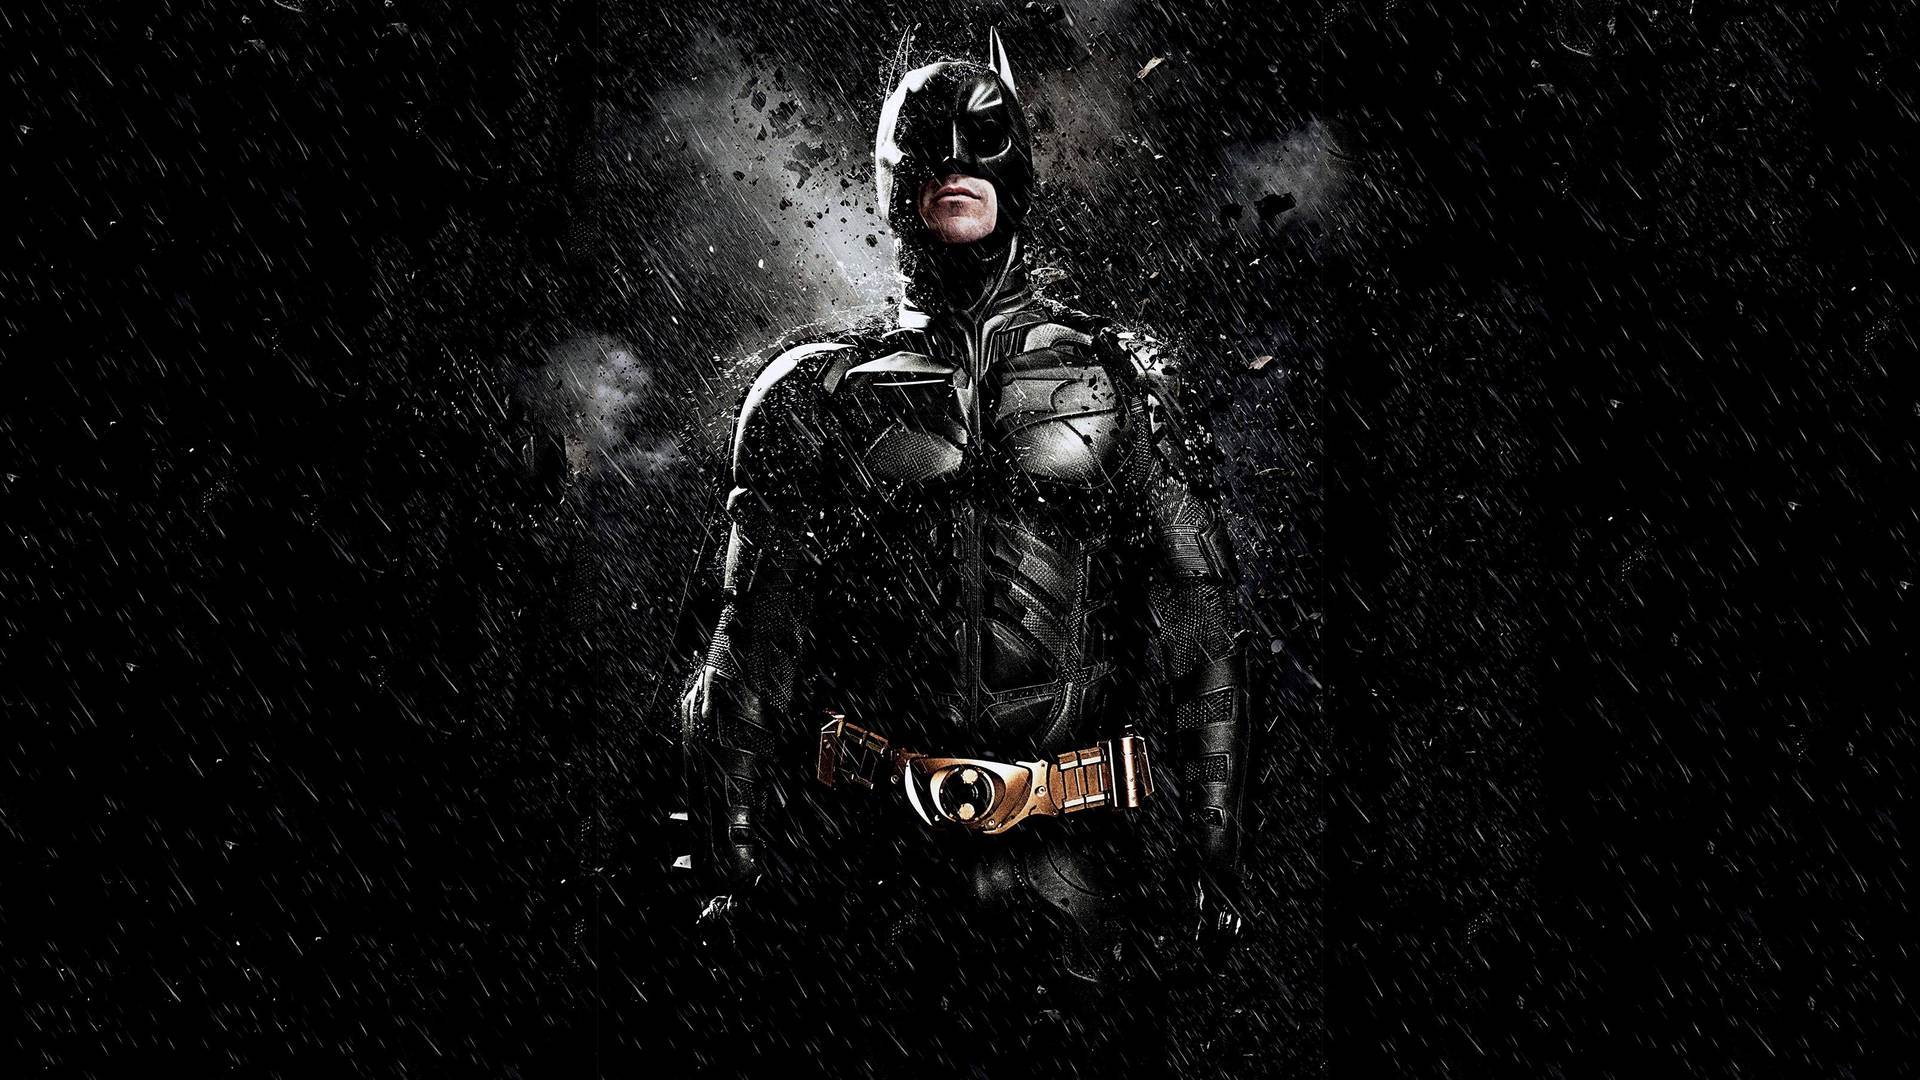 Christian Bale As Batman